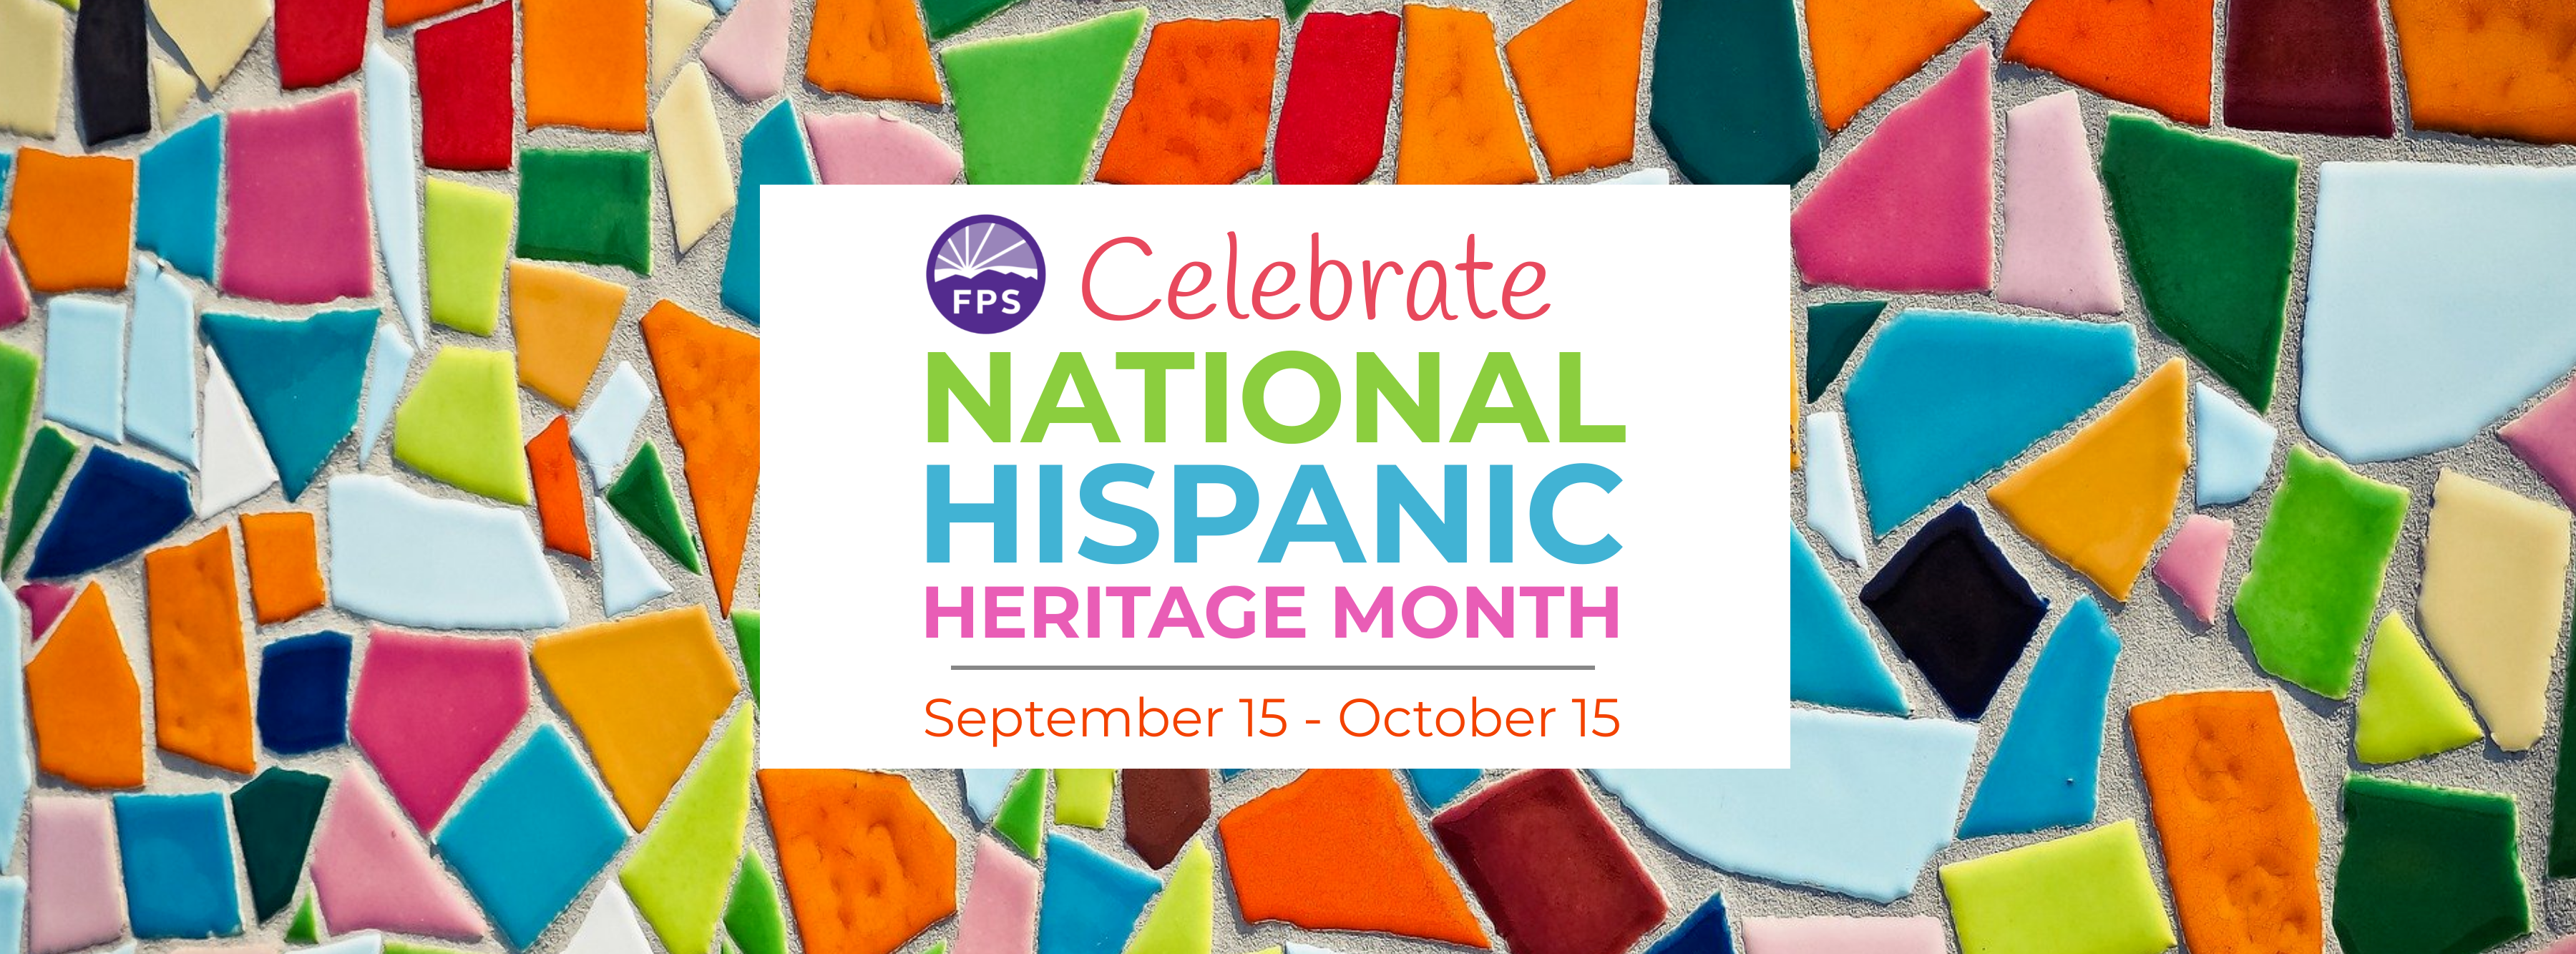 Celebrate National Hispanic Heritage Monty - Sept 15 - Oct 15